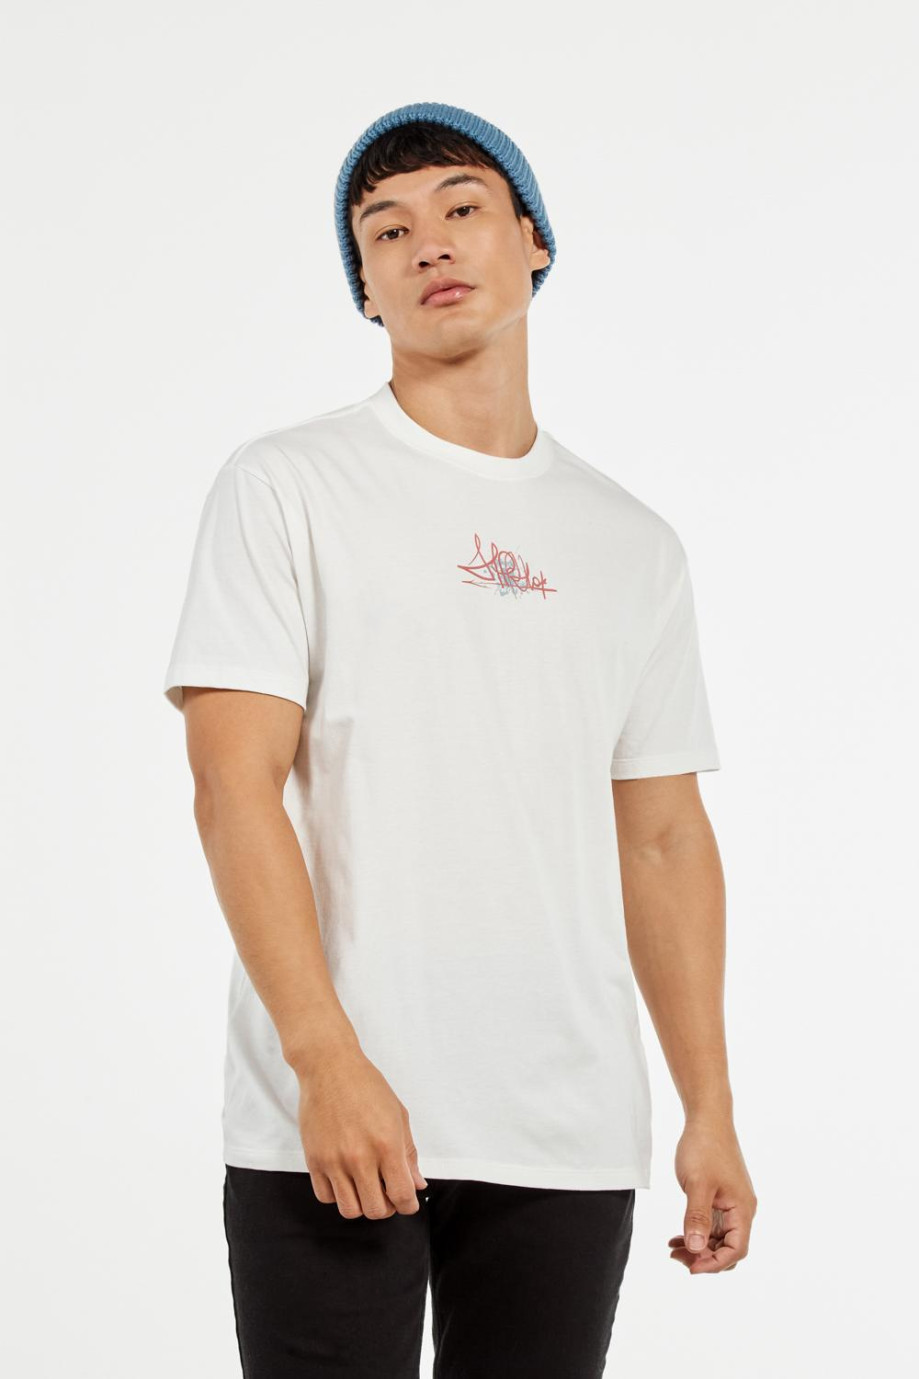 Camiseta oversize crema clara con cuello redondo y diseños de arte